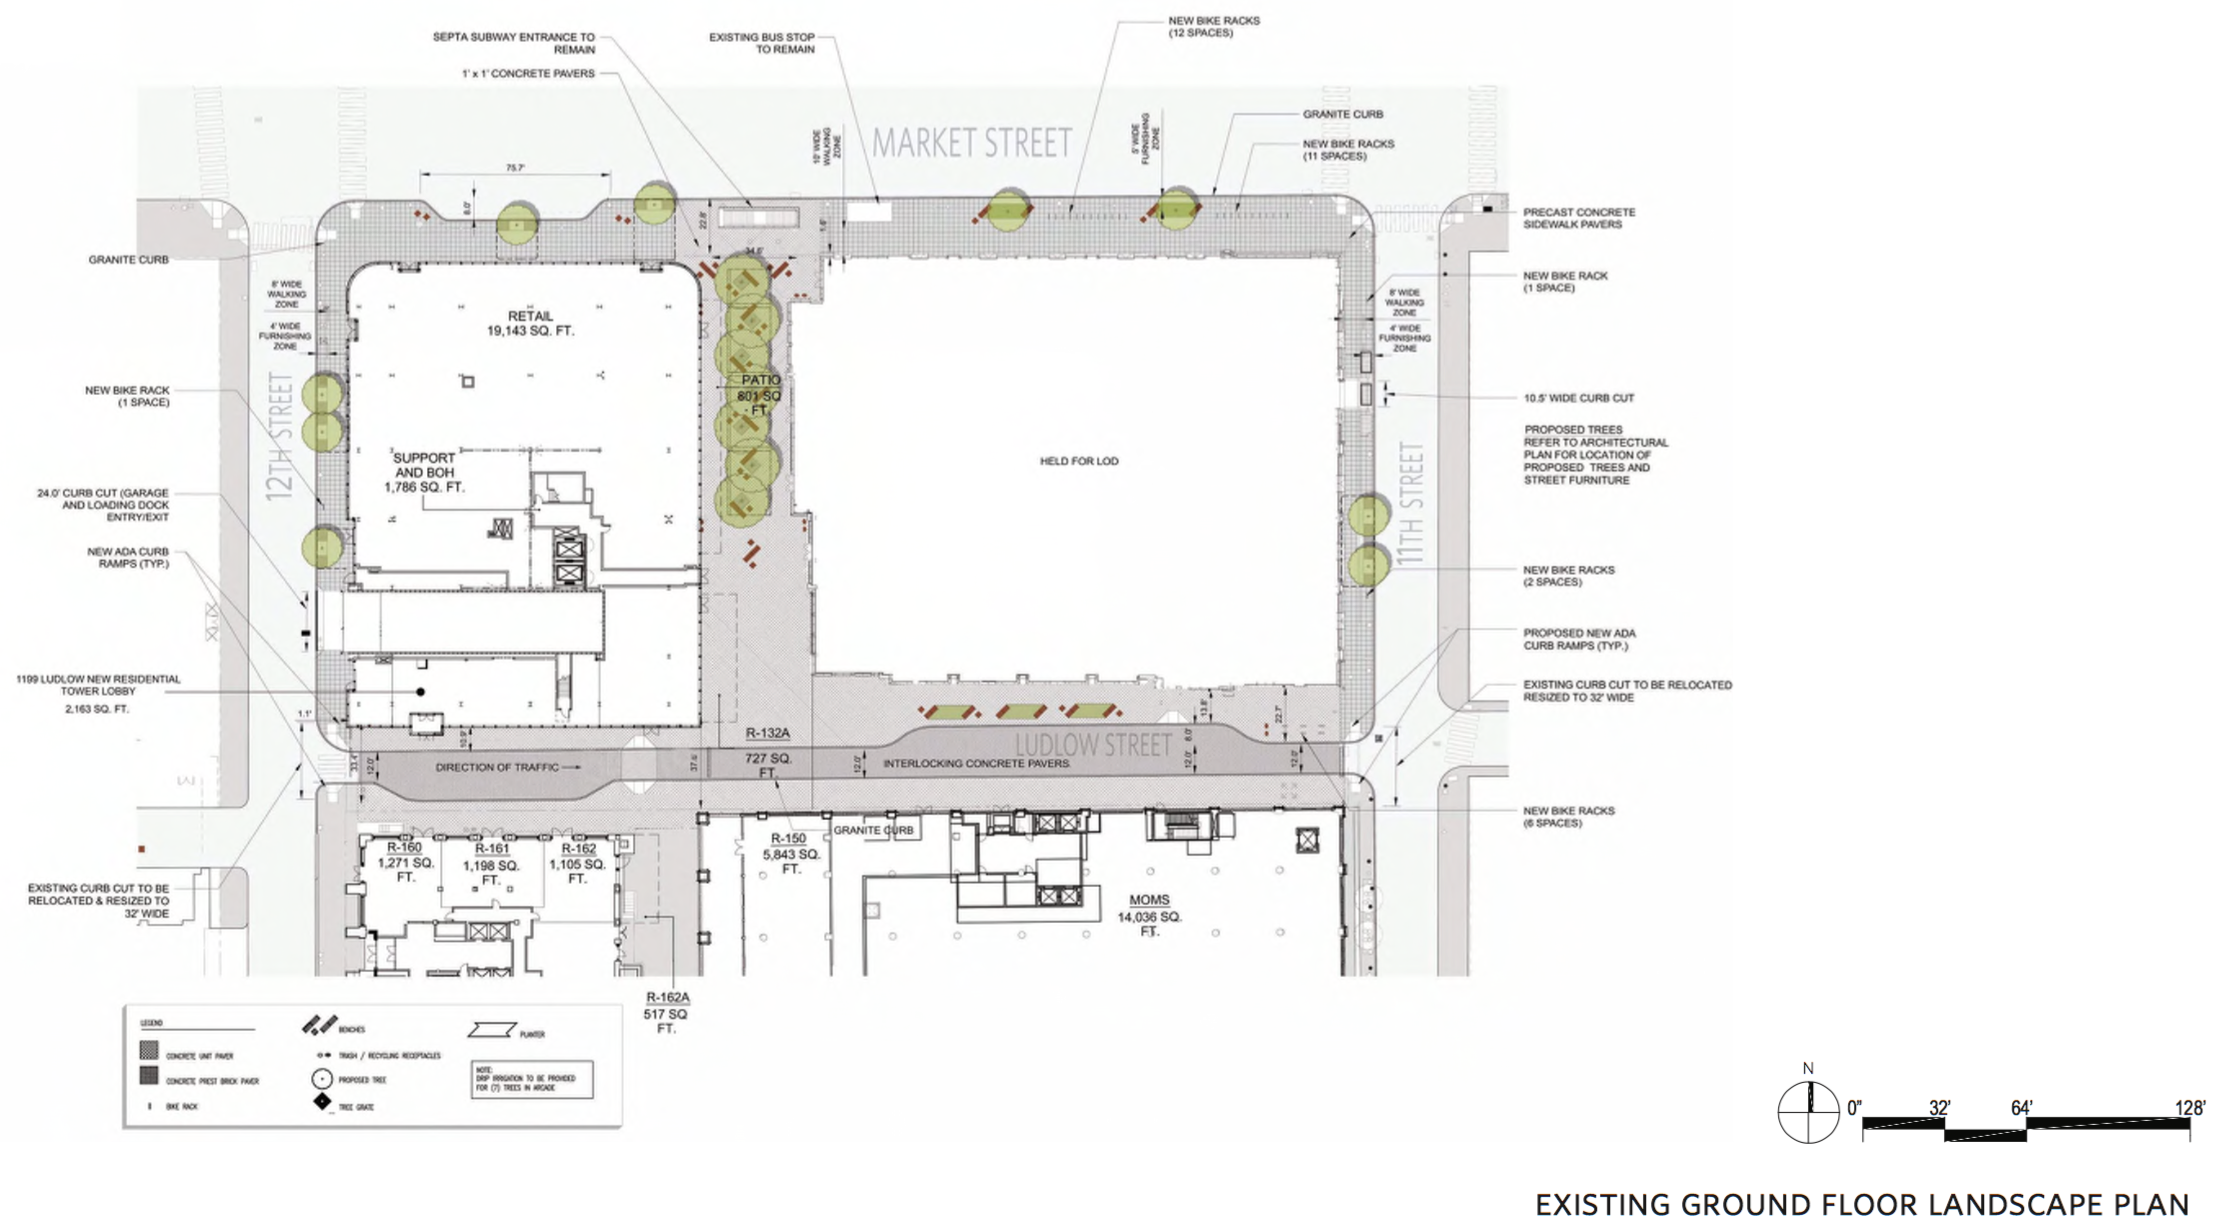 Existing Ground Floor Landscape Plan | BLTa, East Market CDR presentation, Sept. 2016